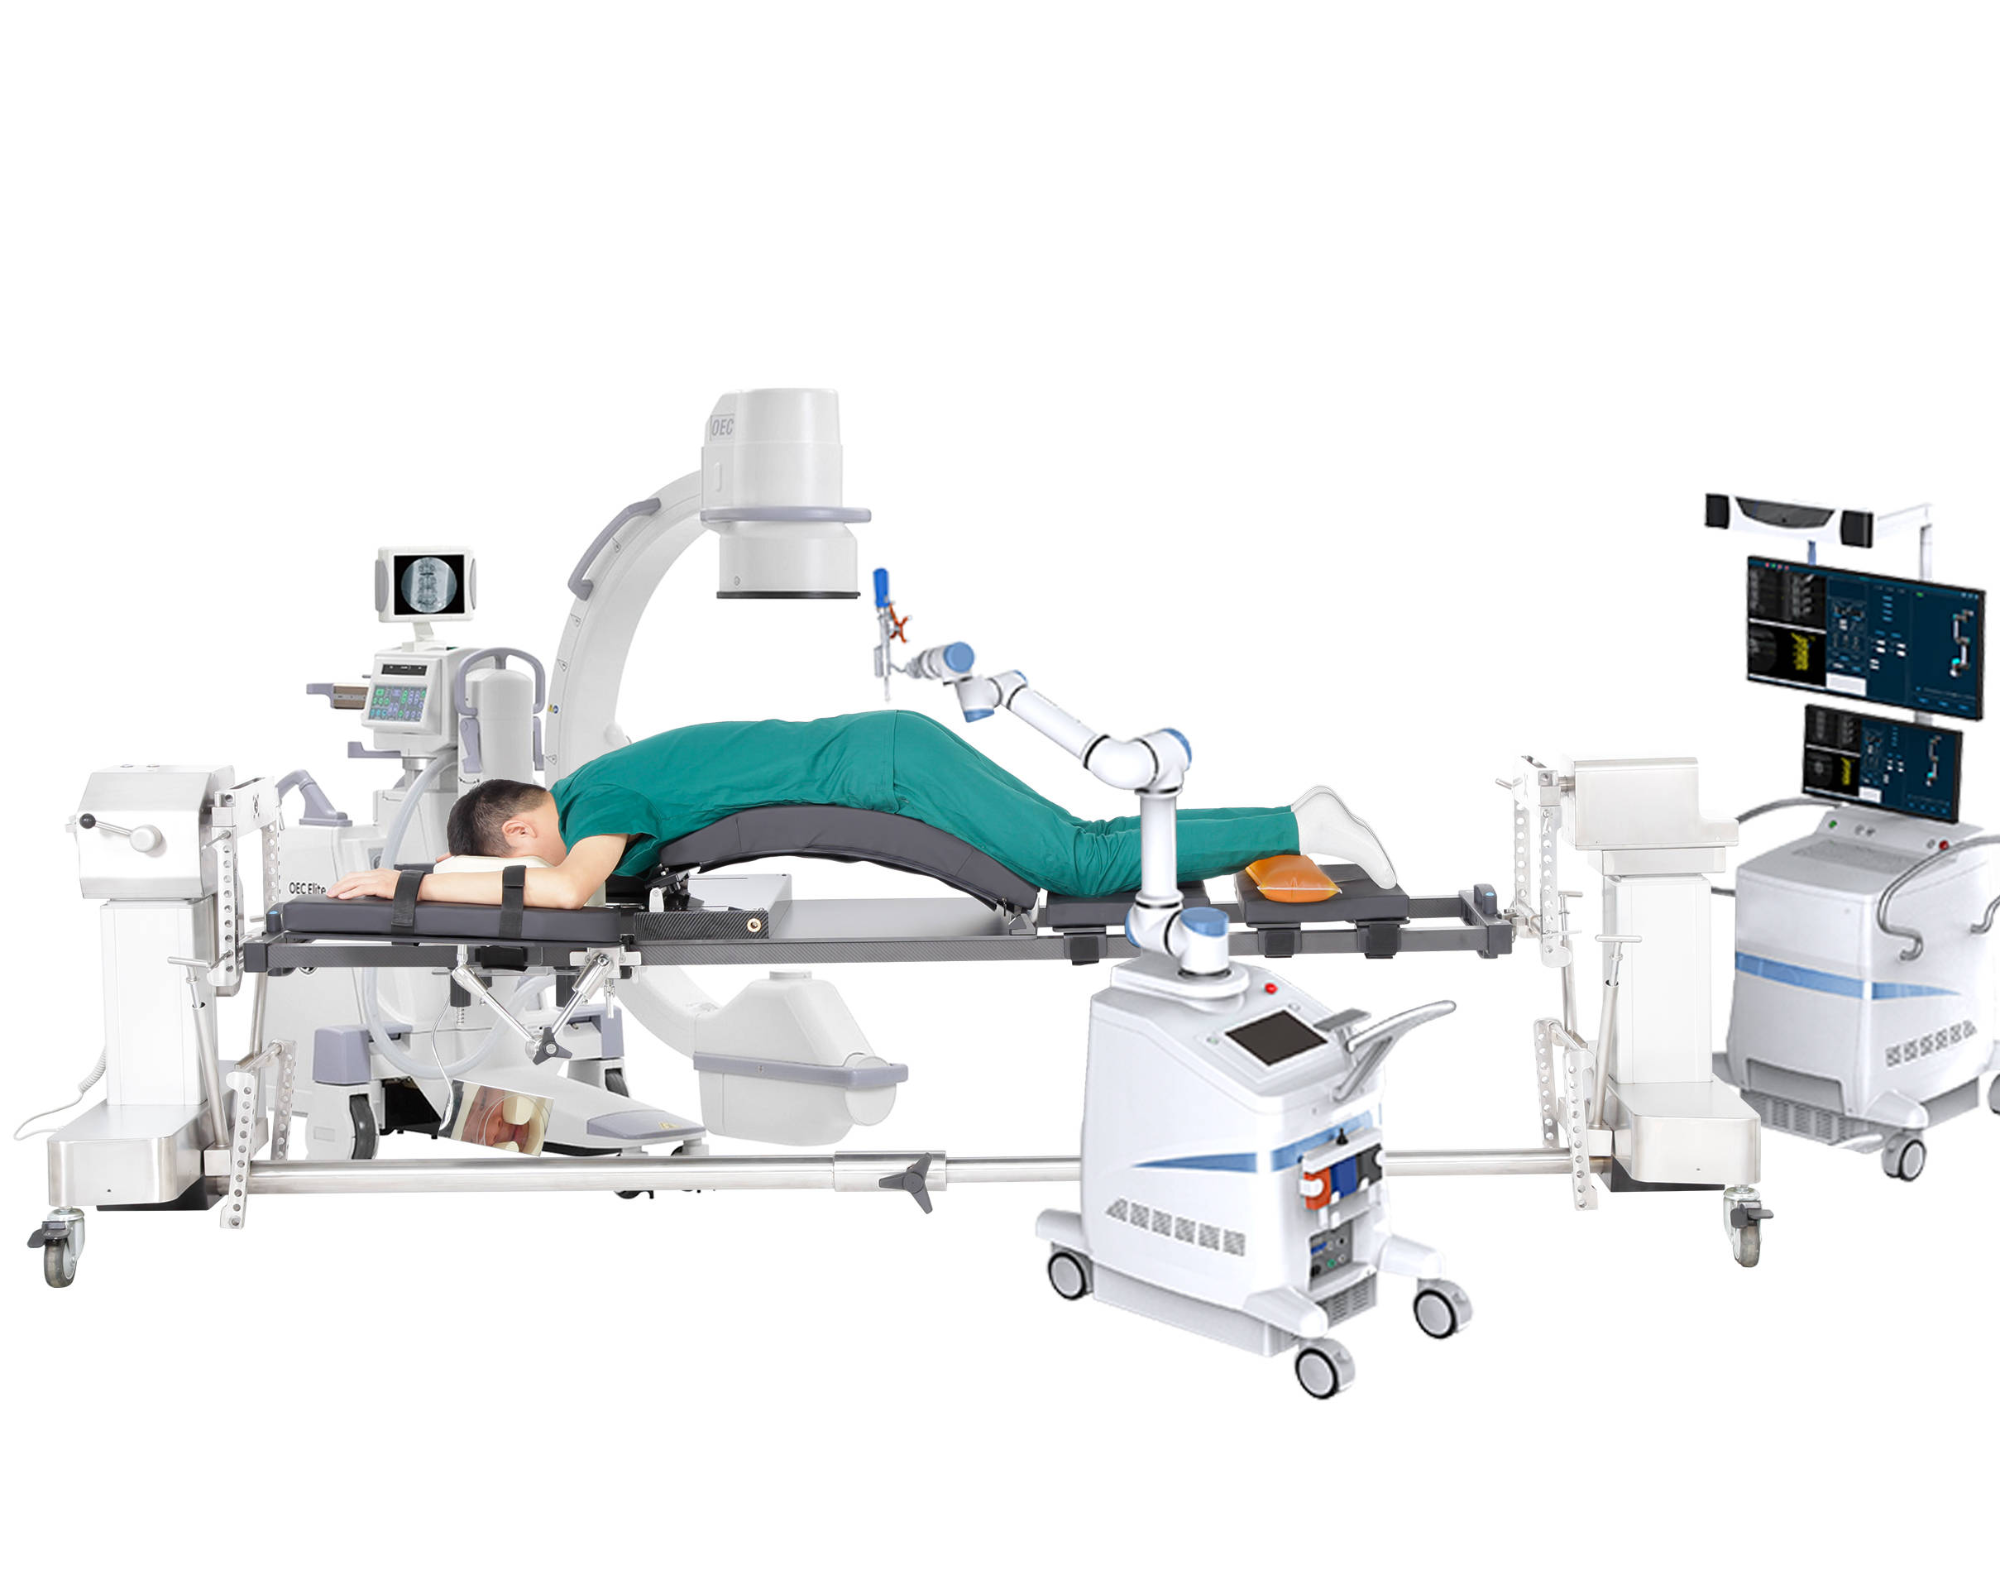 Τι είδους χειρουργικό κρεβάτι είναι κατάλληλο για χειρουργικό σύστημα πλοήγησης και εντοπισμού θέσης;